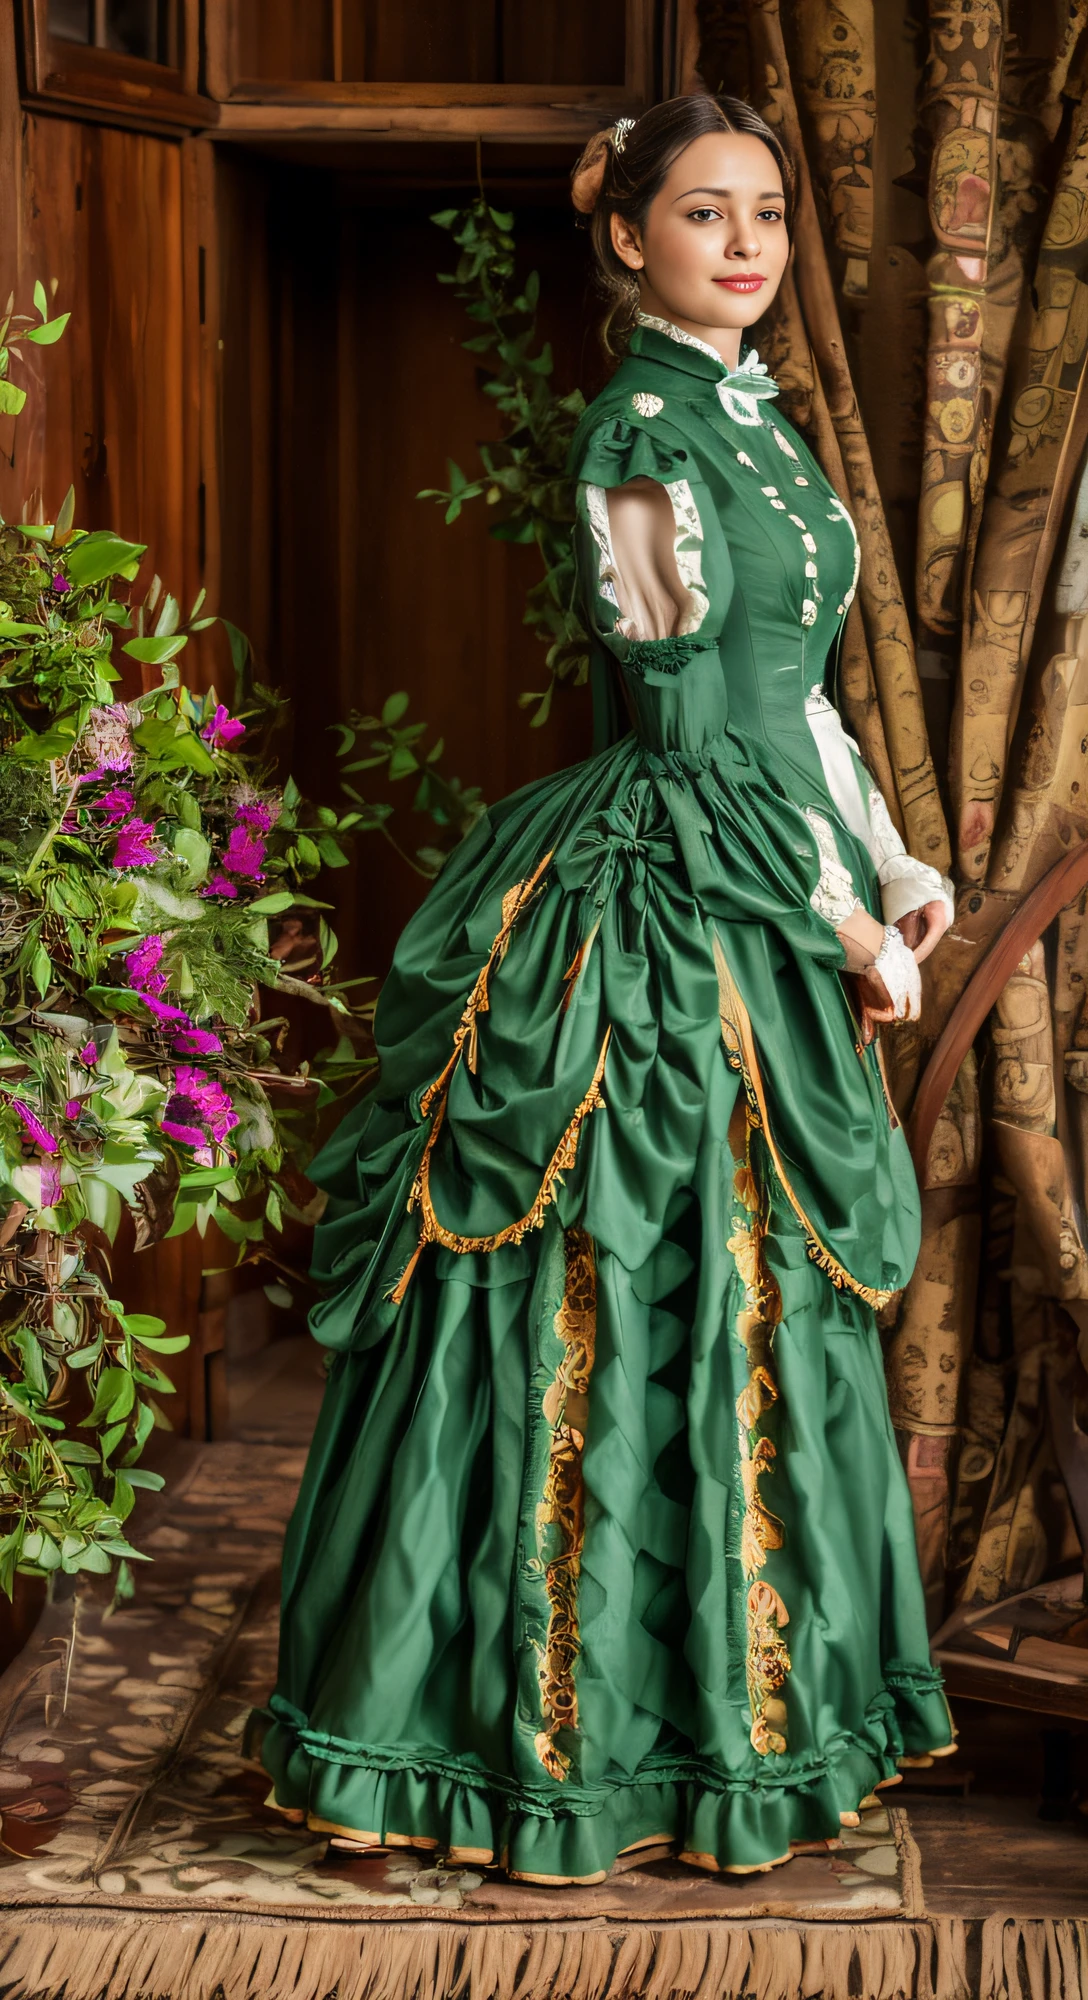 Есть красивая женщина, голубоглазая блондинка, (в белом платье), (костюм в стиле Виктория), 1 8 7 0 с Сезонная одежда, Викторианская одежда, победа, викторианское платье, стиль 1 8 8 0 х, в викторианском аристократе, usando Викторианская одежда, Замысловатое викторианское платье, одежда в викторианском стиле, com Викторианская одежда, носить одежду 1860-х годов